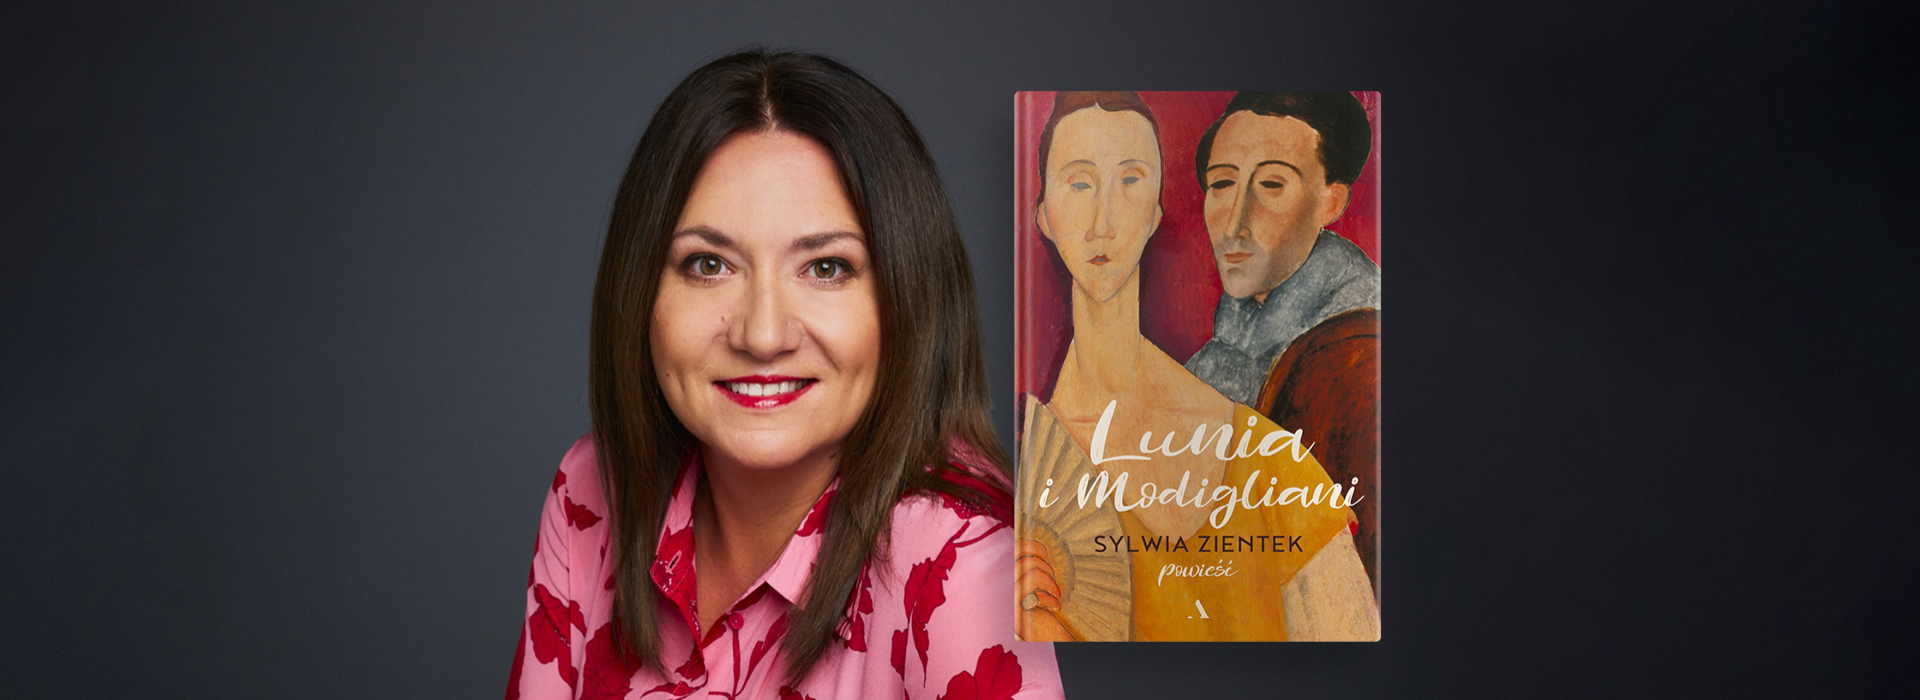 "Lunia i Modigliani" - nowa powieść Sylwii Zientek